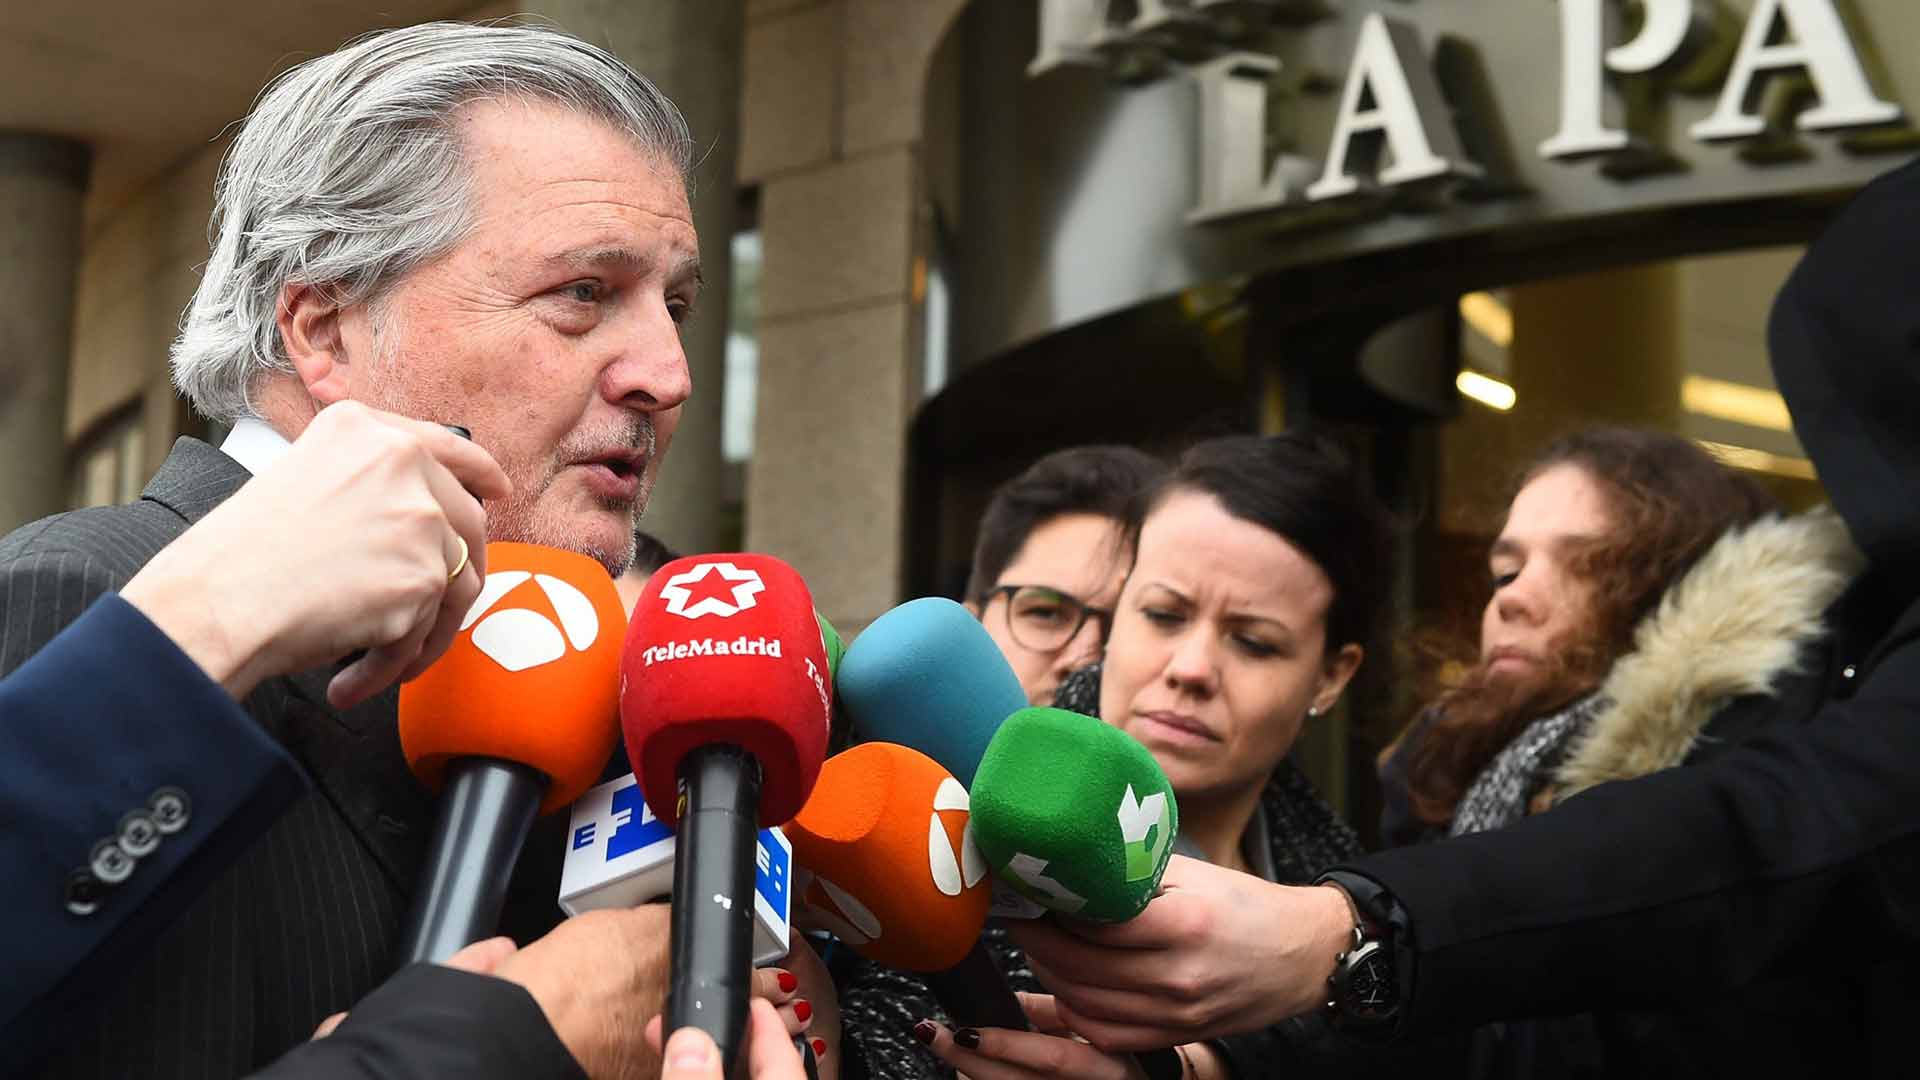 El exministro Méndez de Vigo anuncia que deja la política